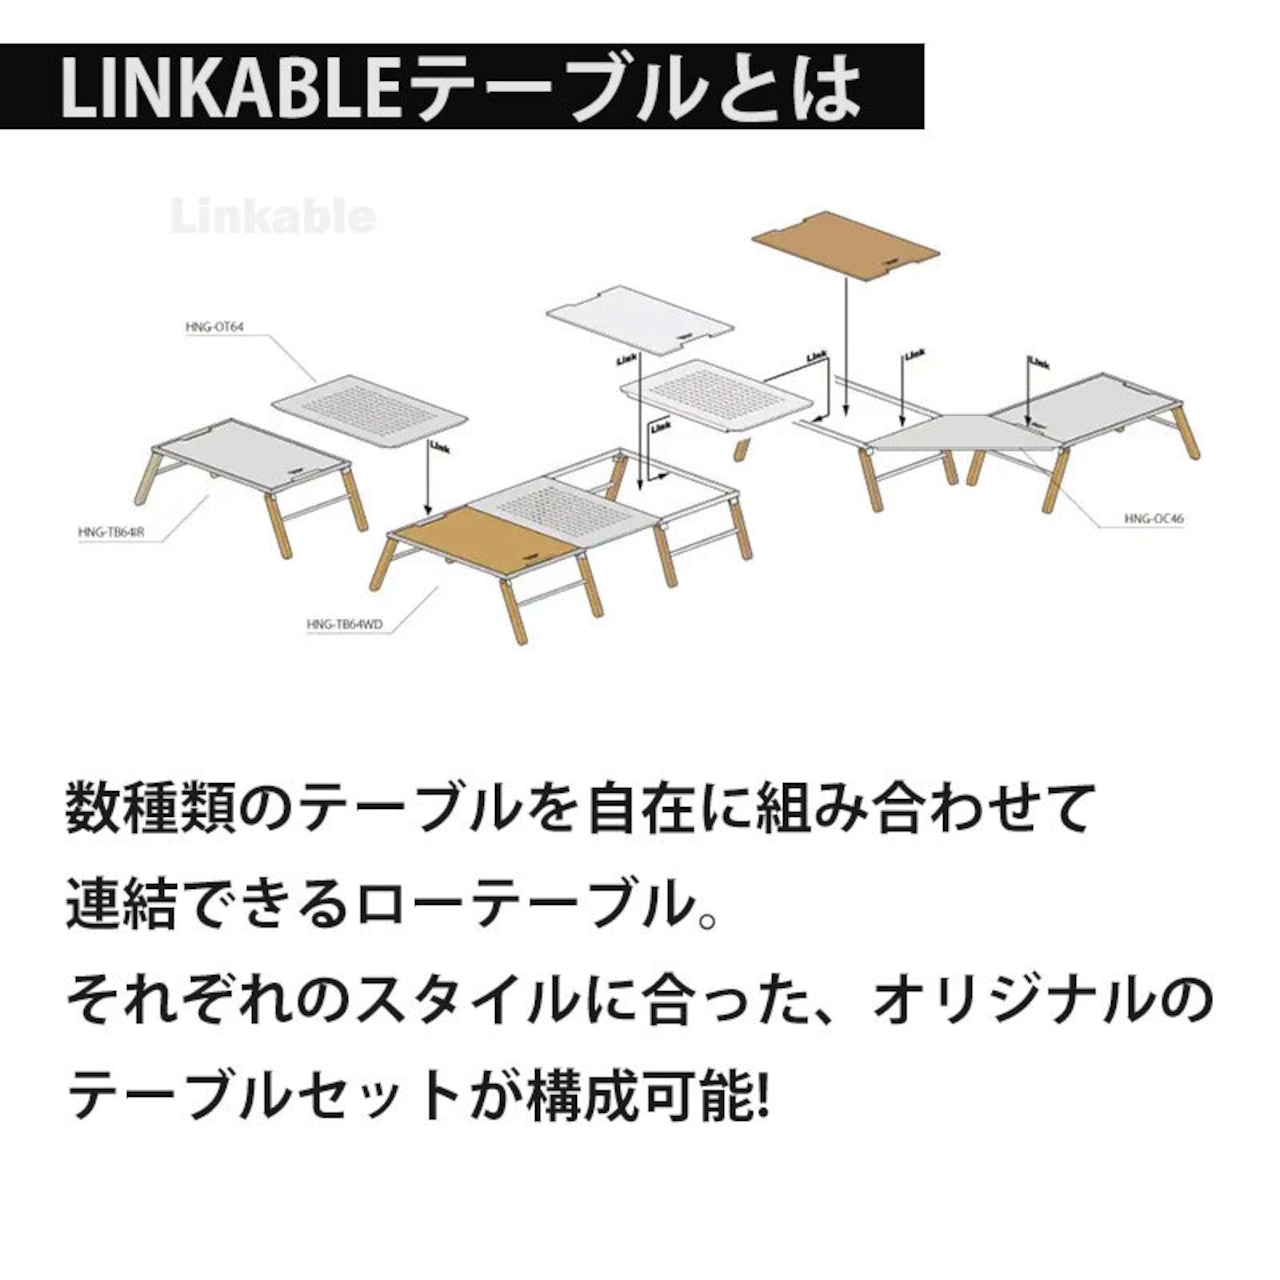 HangOut ハングアウト 折りたたみ アウトドア Linkable Table(Iron) リンカブル アイアン テーブル